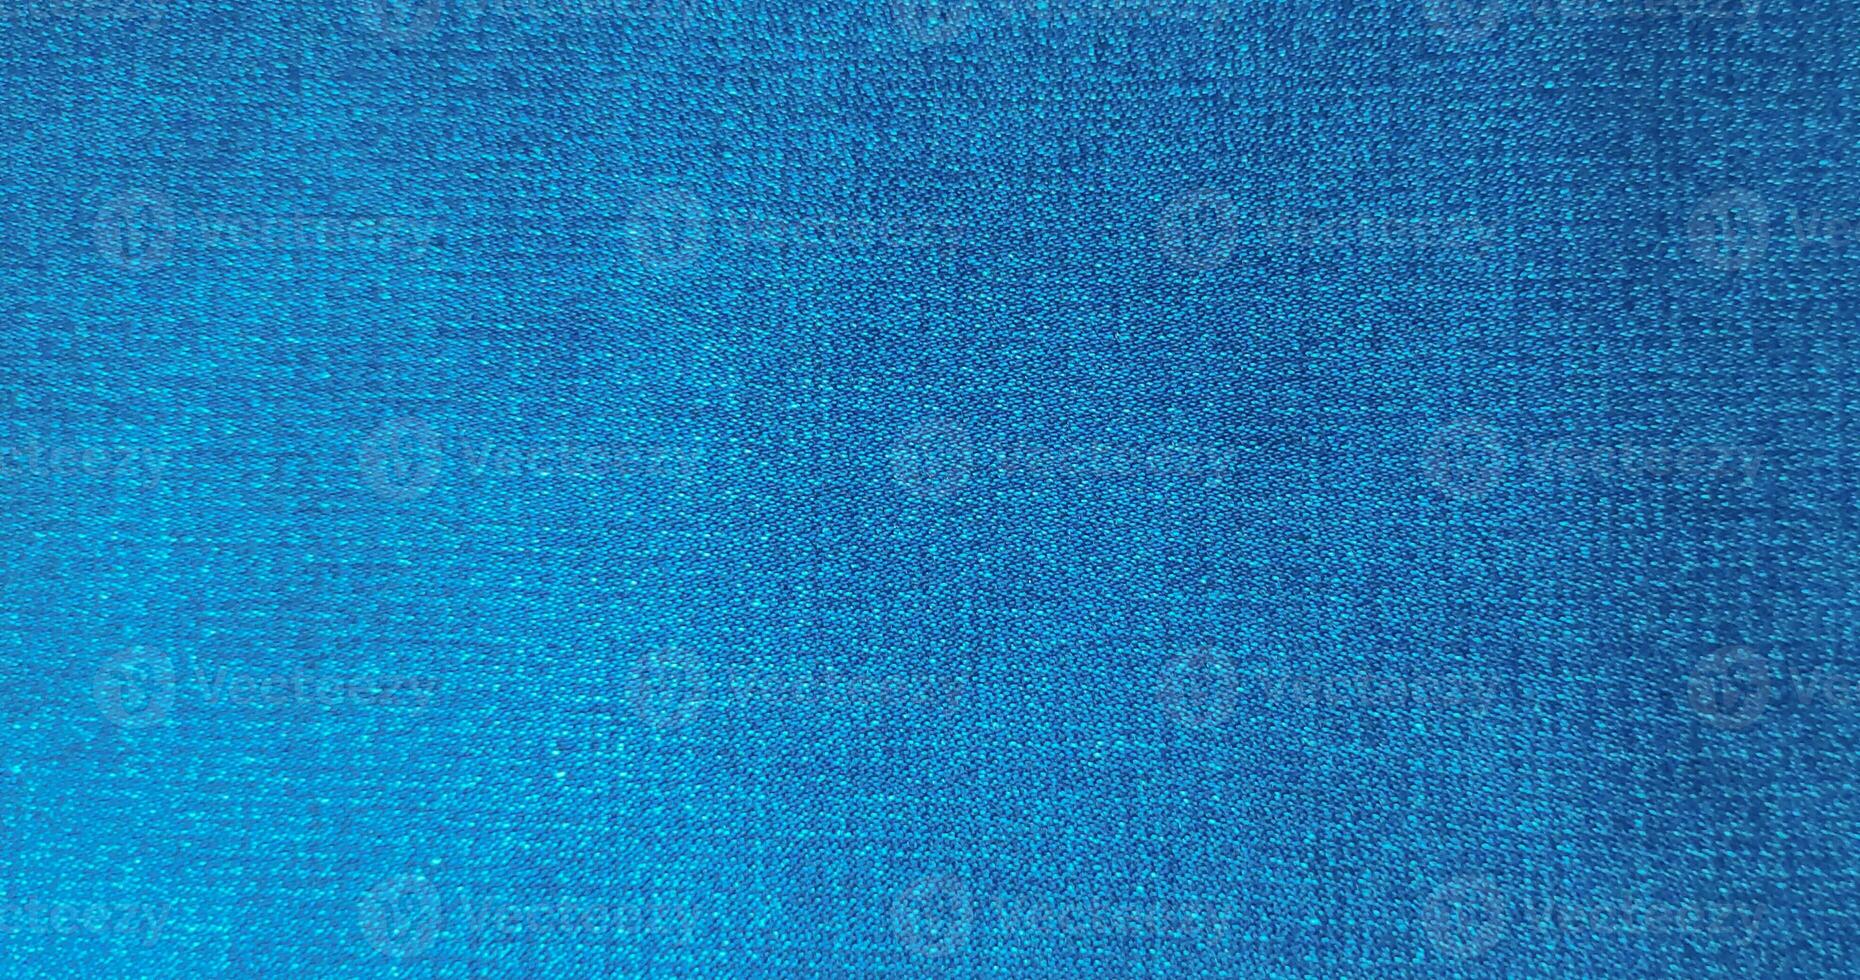 leggero blu colore astratto denim giacca, Vintage ▾ denim jeans stoffa e tessuto vicino su macro foto per sfondo